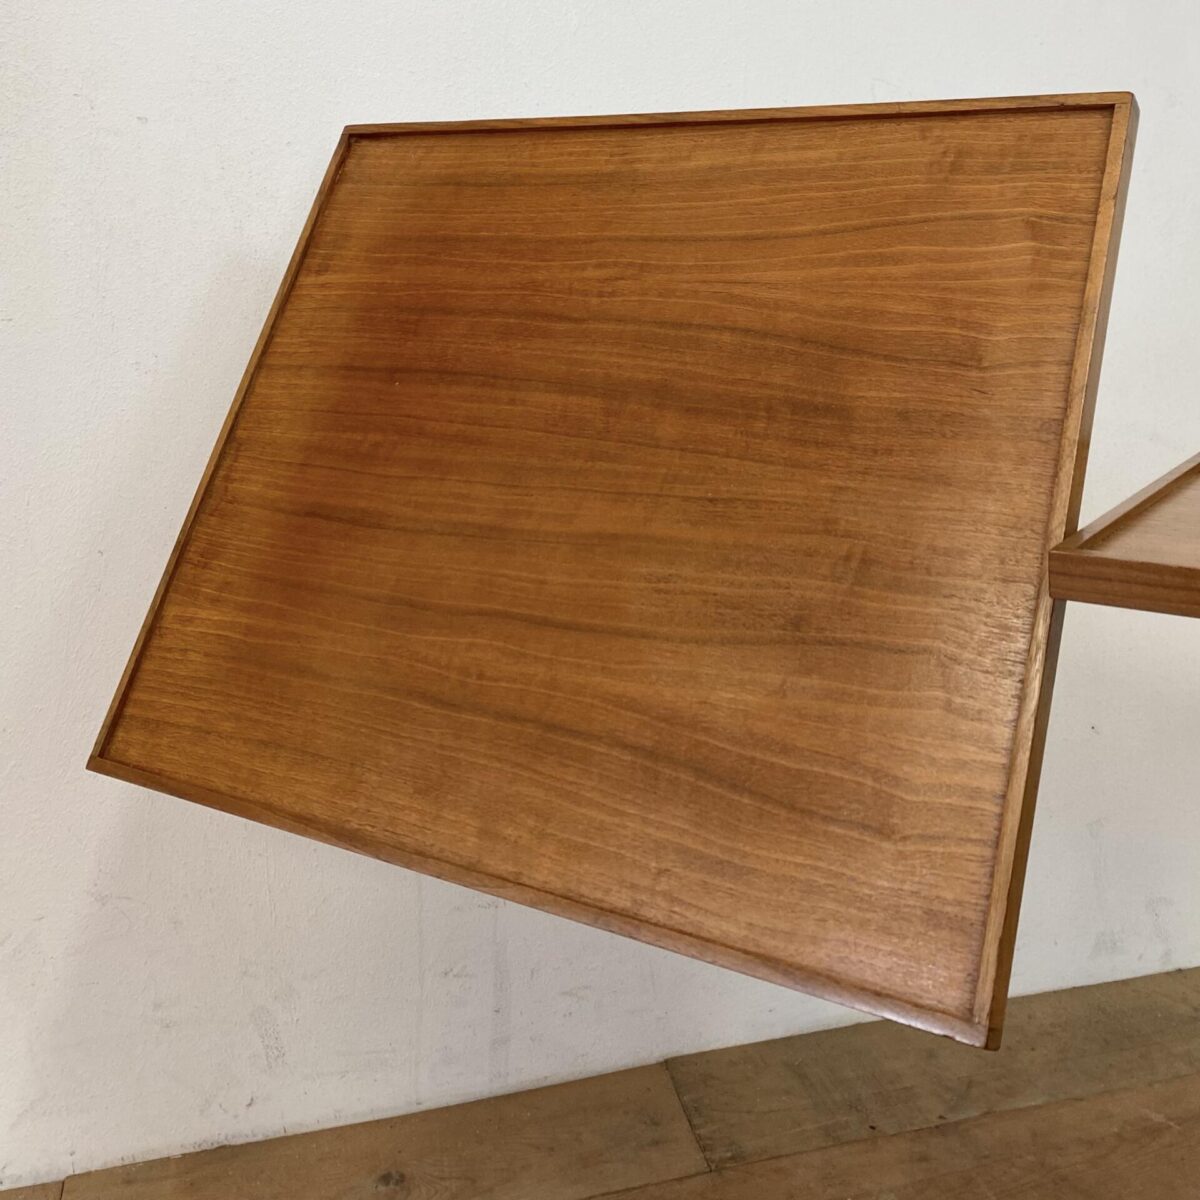 Deuxieme.shop Höhenverstellbarer Embru Tisch, von Georg Albert Ulysse Caruelle. Entwurf aus den 50er Jahren. Der Tisch ist höhenverstellbar von 70 bis 98cm. Die Hauptplatte ist Neigbar und misst 51.5x41.5cm. Das Metallgestell ist Kupferbrüniert, der eine fuss ist ausziehbar. Der Tisch kann vielseitig eingesetzt werden, als Betttisch, Sofa Beistelltisch, Notenständer oder als kleiner Arbeitstisch.